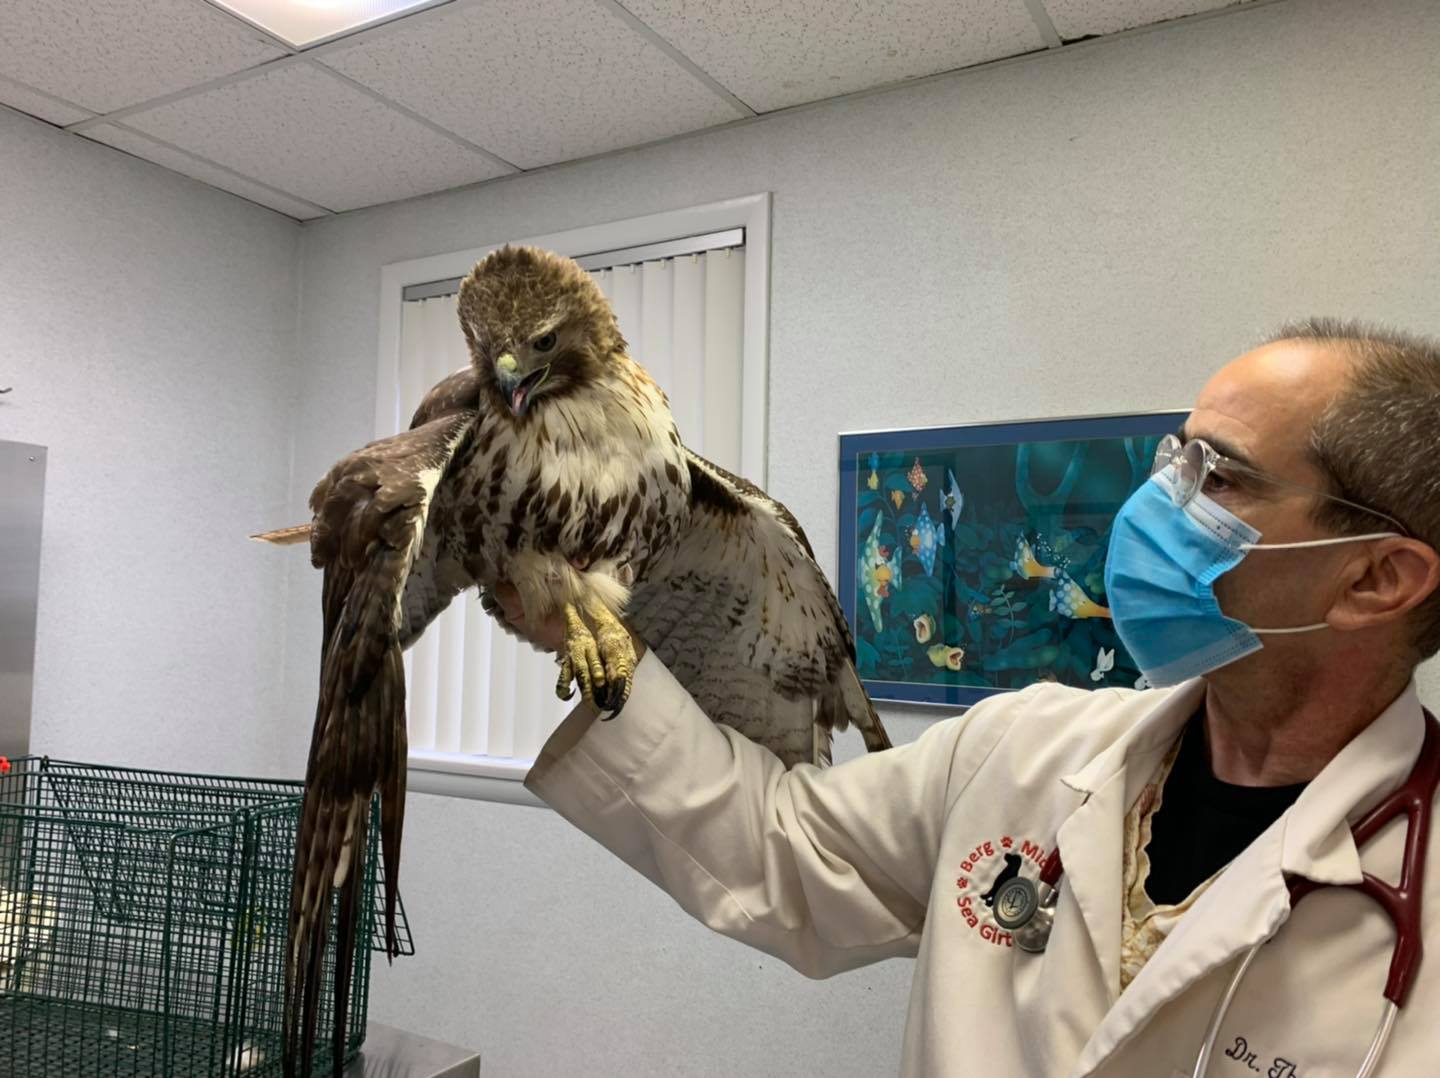 A Hawk receiving care